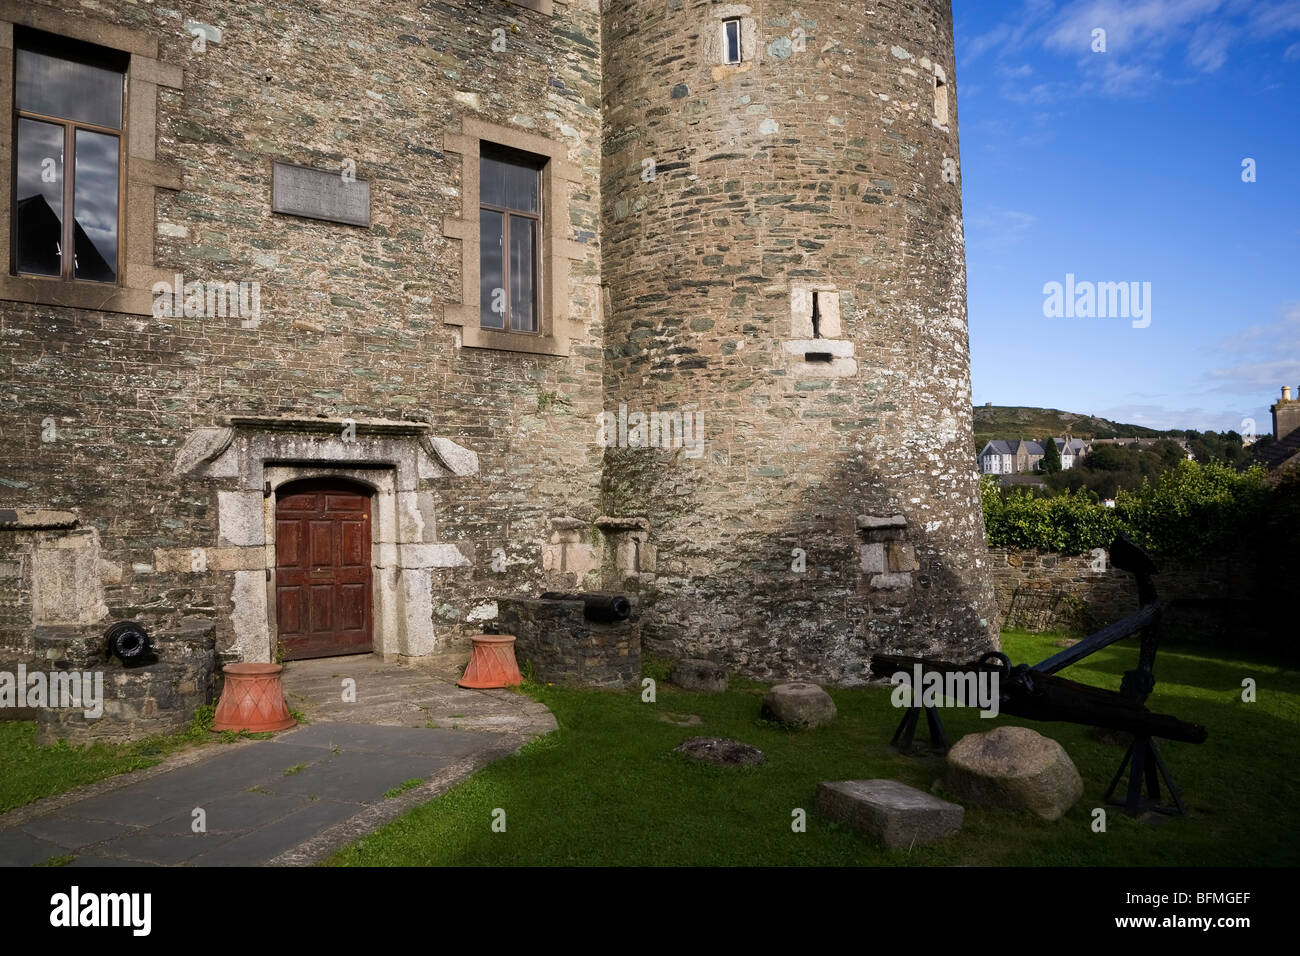 Le château du 13ème siècle rénovée et musée avec vinaigre lointain Hill, Monkton, Co Wexford, Irlande Banque D'Images